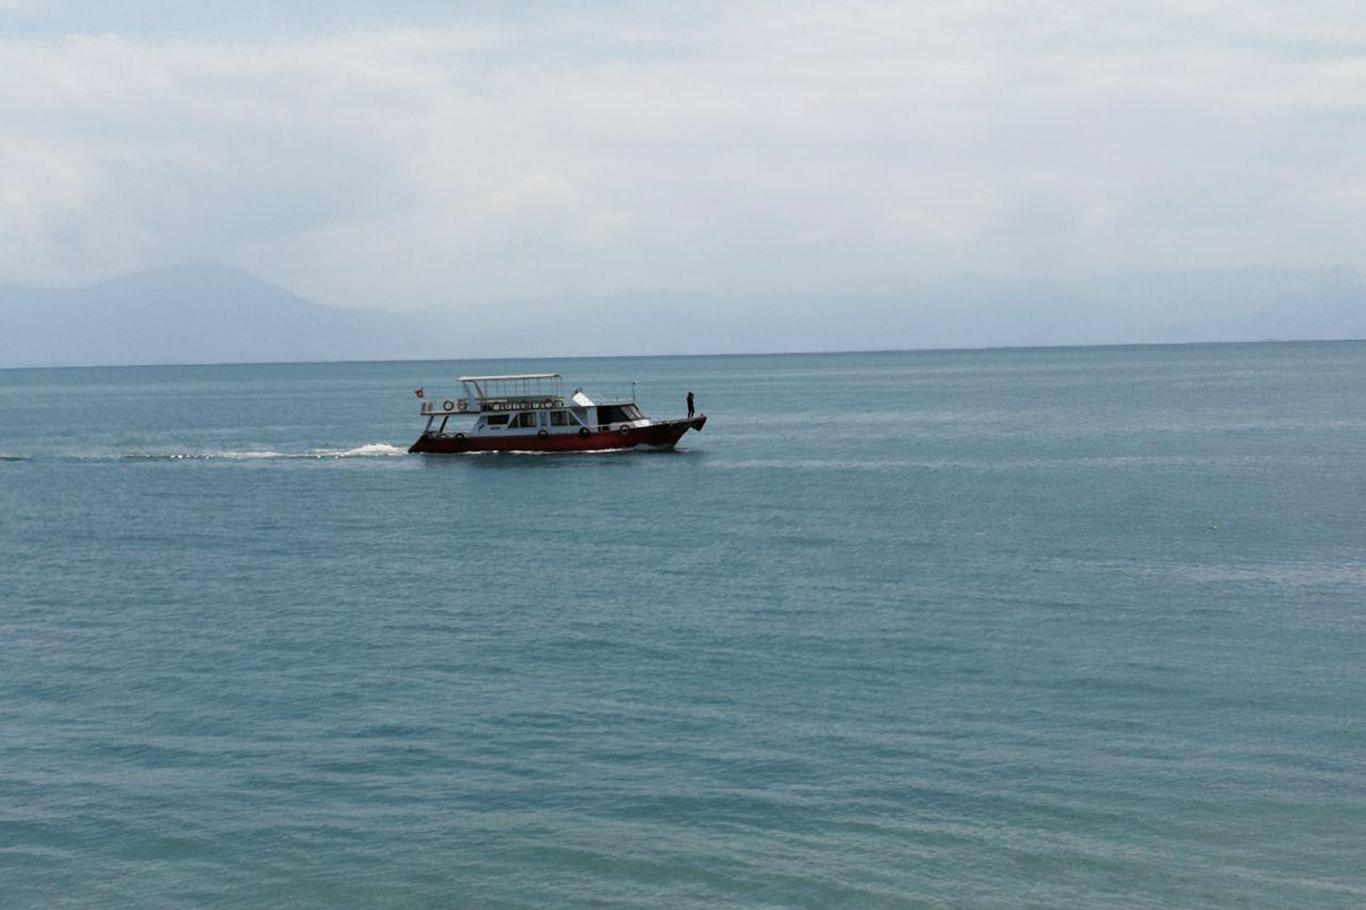    Van'da batık mülteci teknesinin bulunması çalışmalar devam ediyor